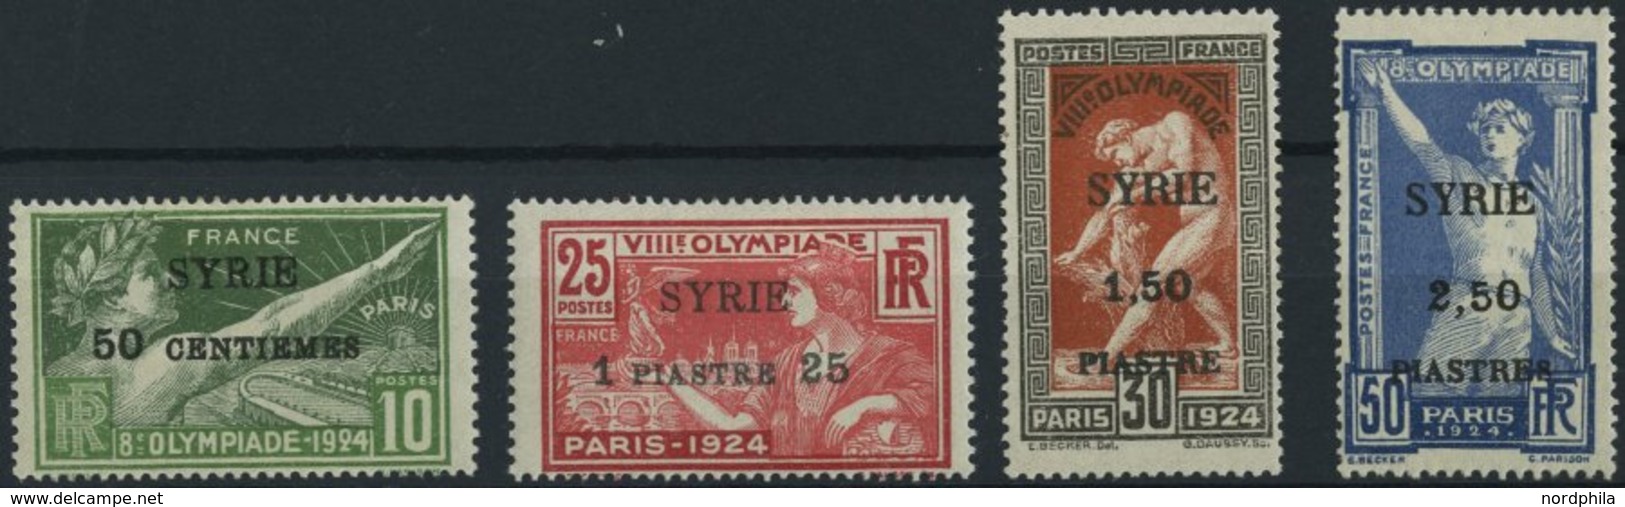 SYRIEN 227-30 *, 1924, Olympische Spiele, Aufdruck SYRIE, Falzreste, üblich Gezähnter Prachtsatz, Mi. 220.- - Syrien